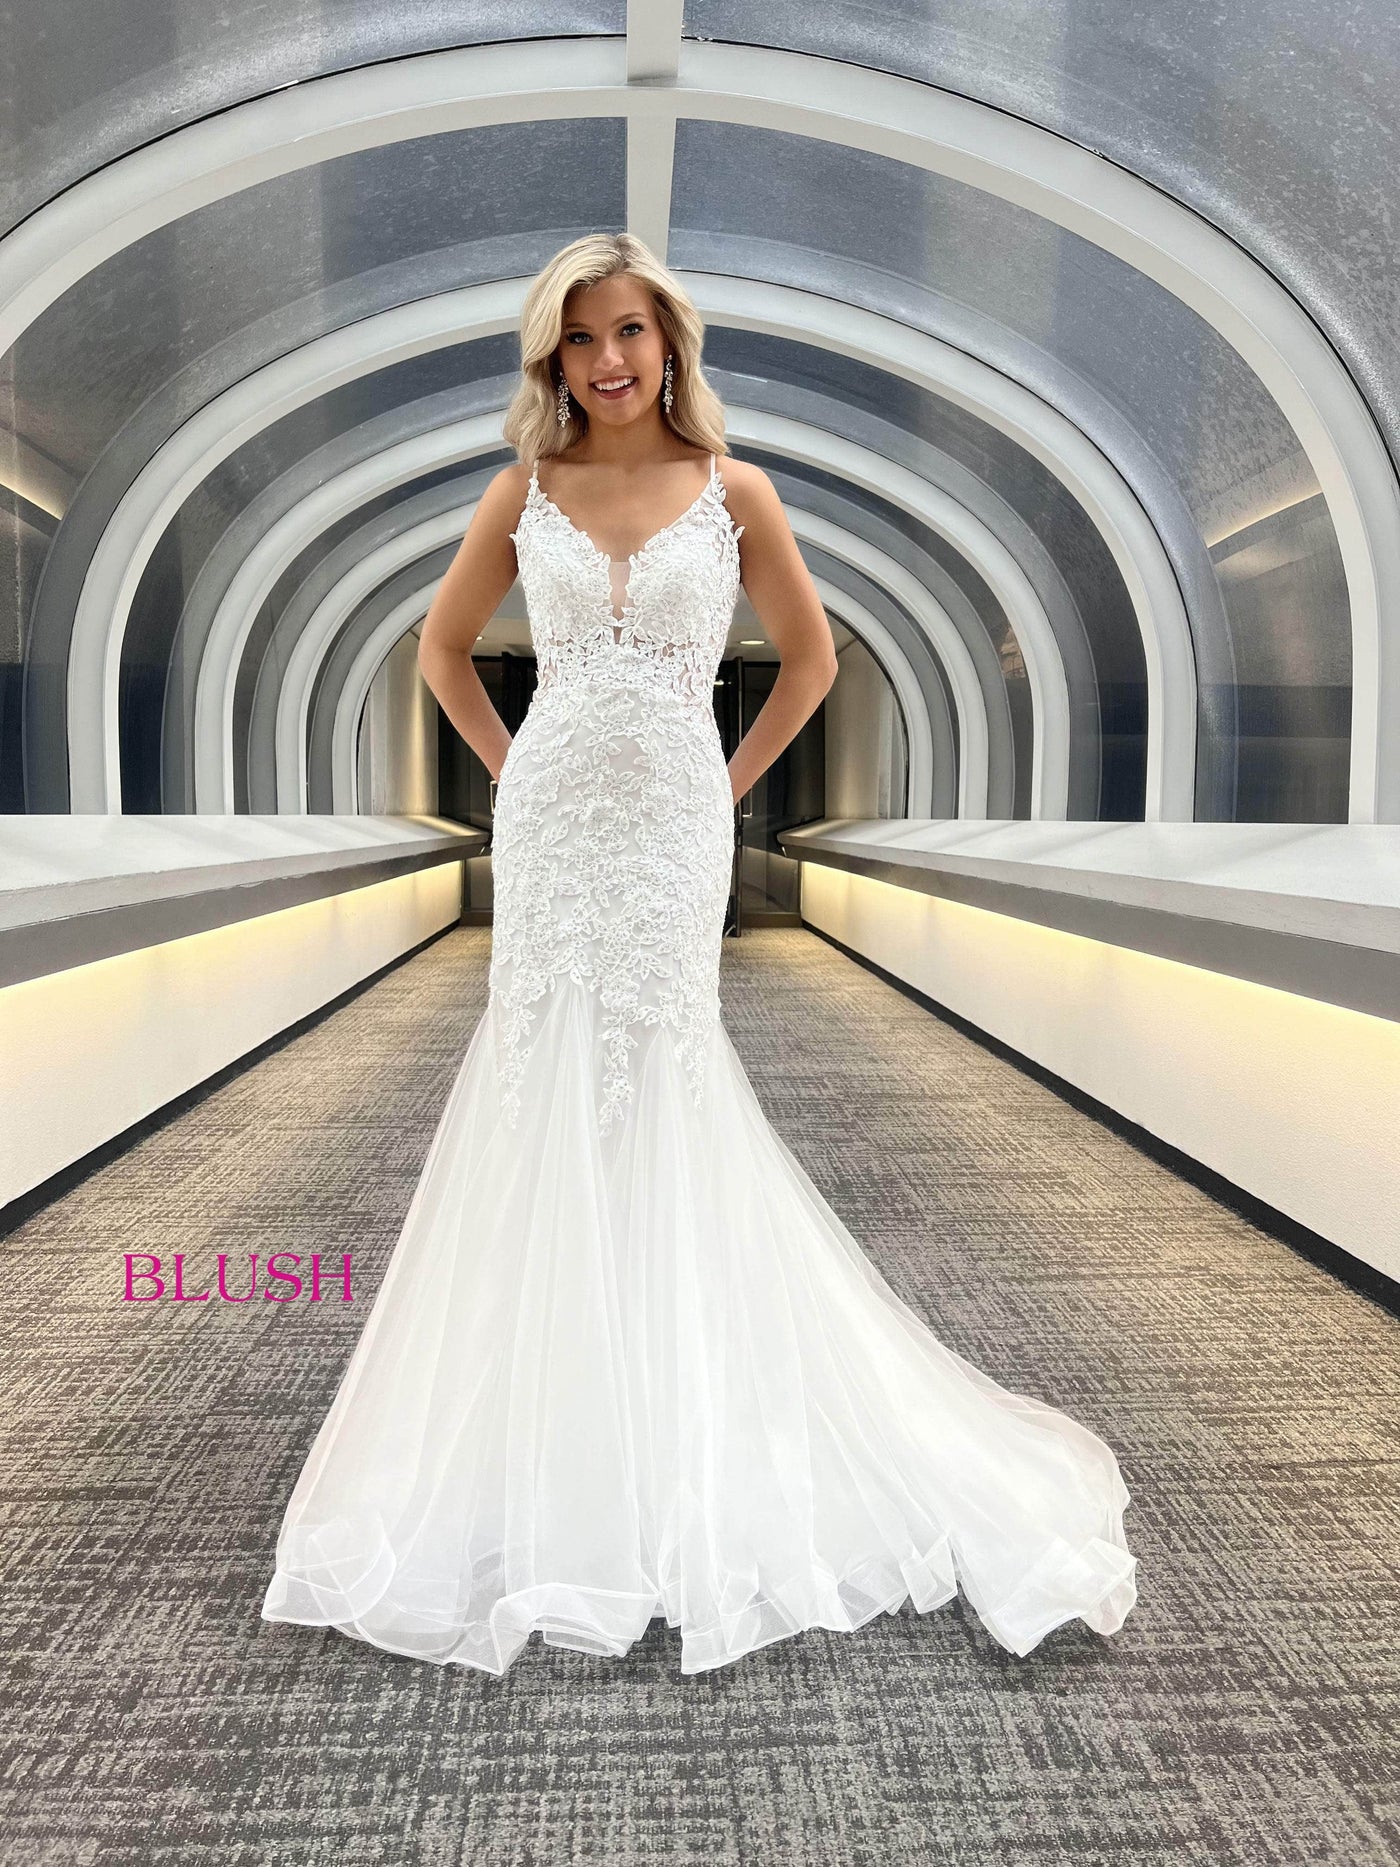 Blush by Alexia Designs 12130 - Applique V-Neck Prom DressSpecial Occasion Dress